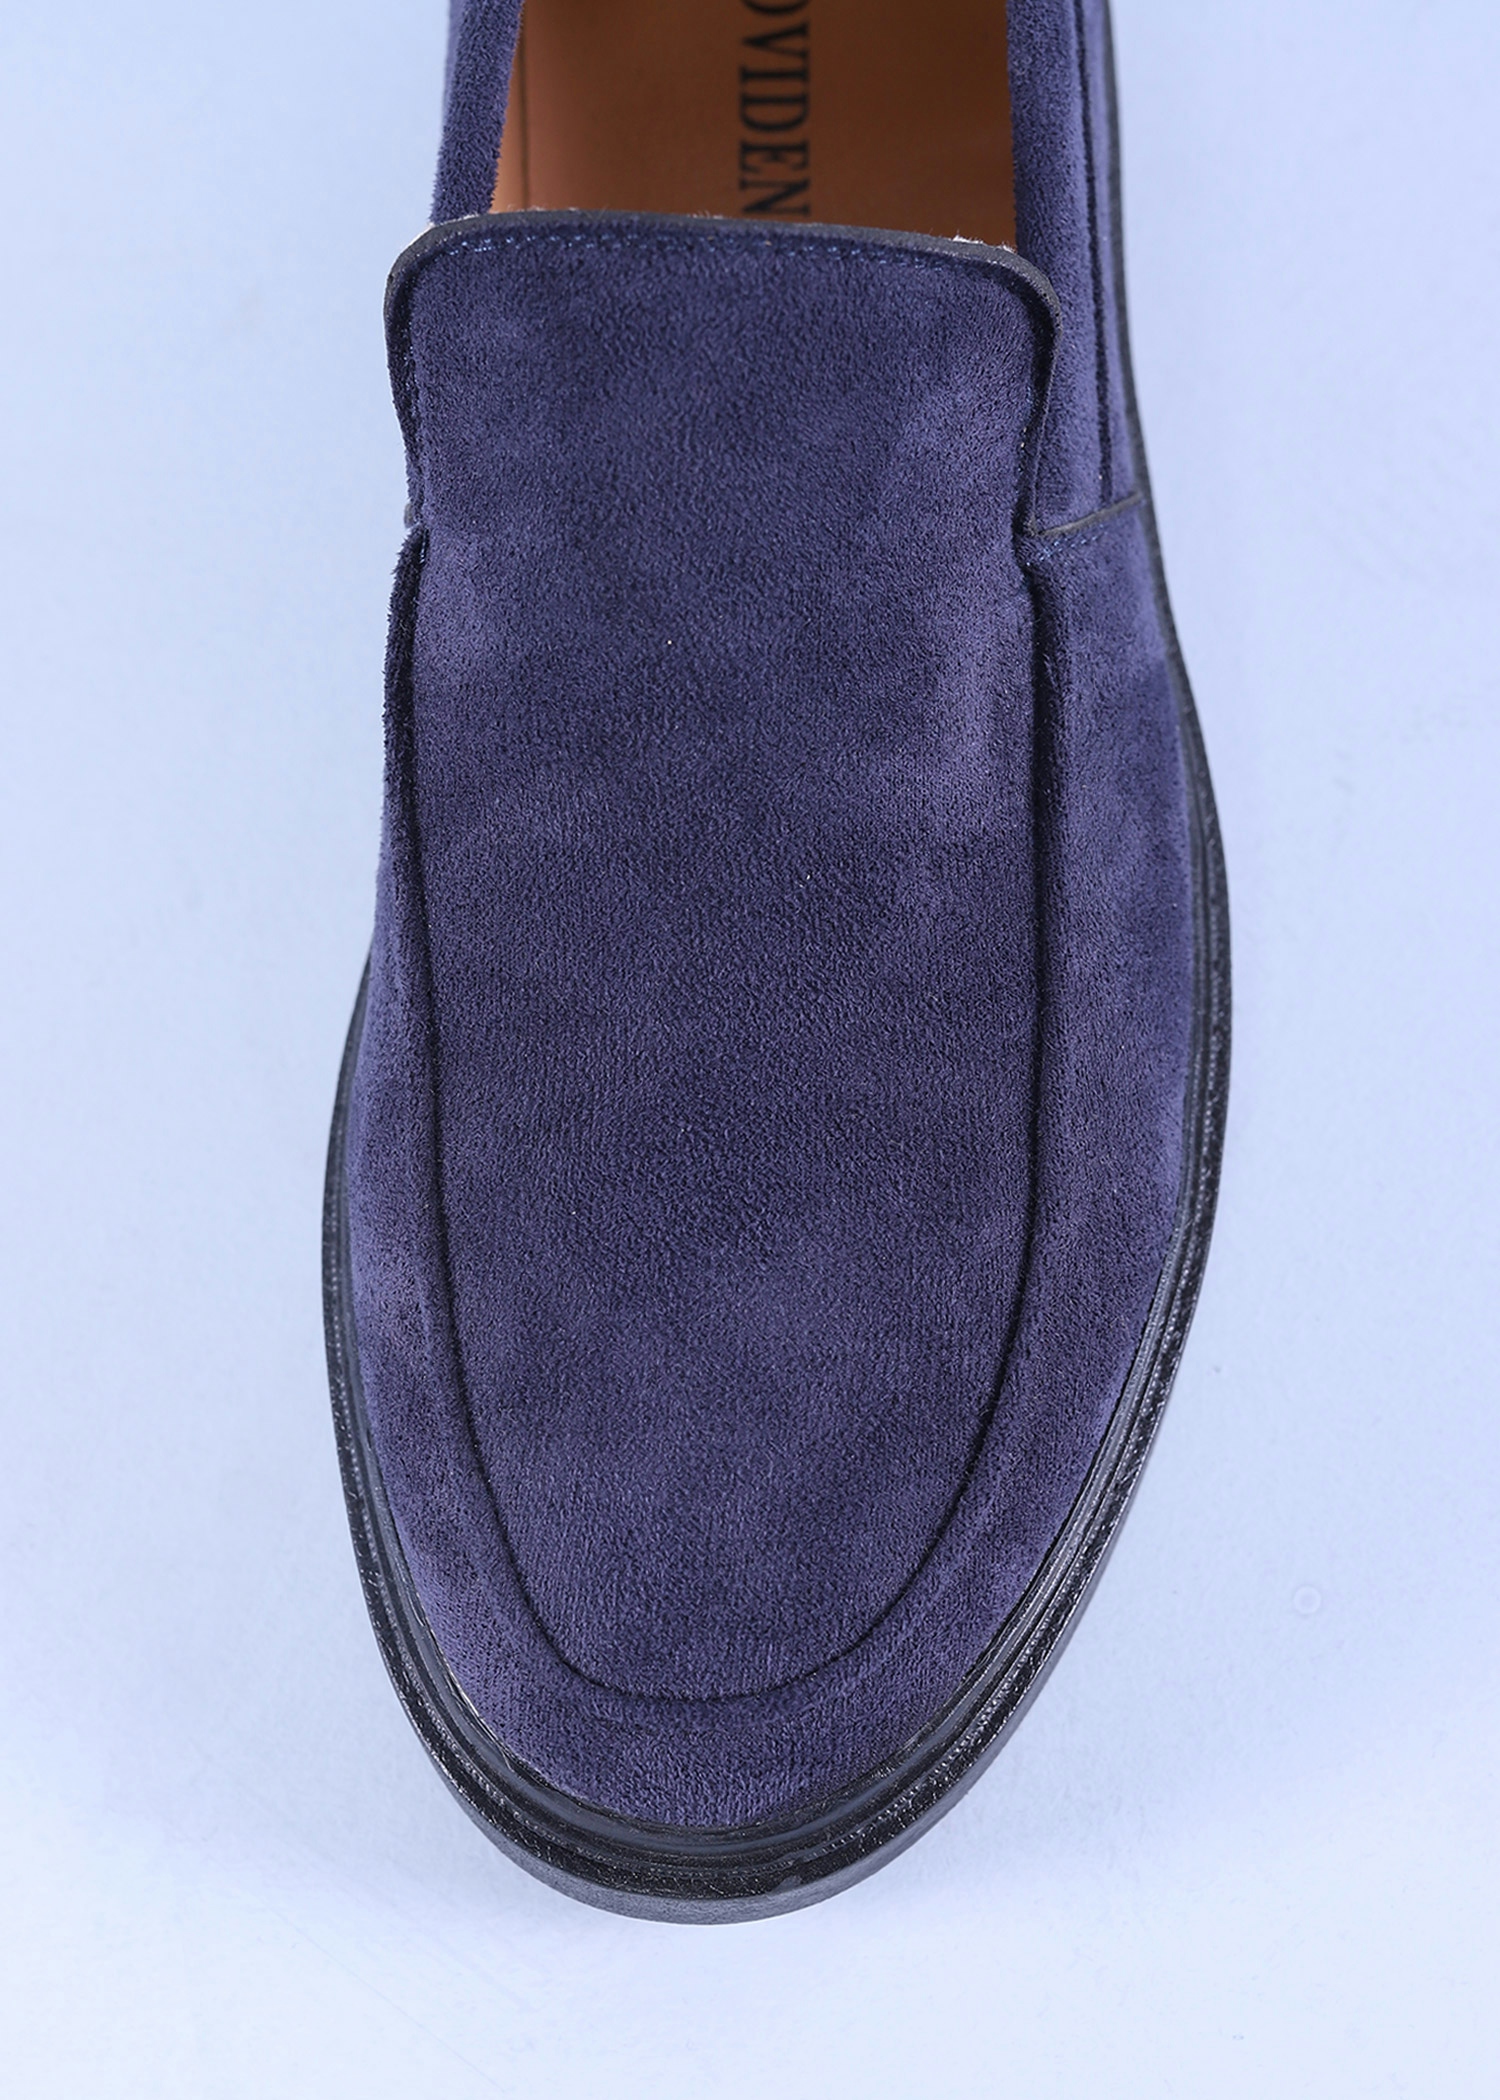 segura mens shoes navy color top close